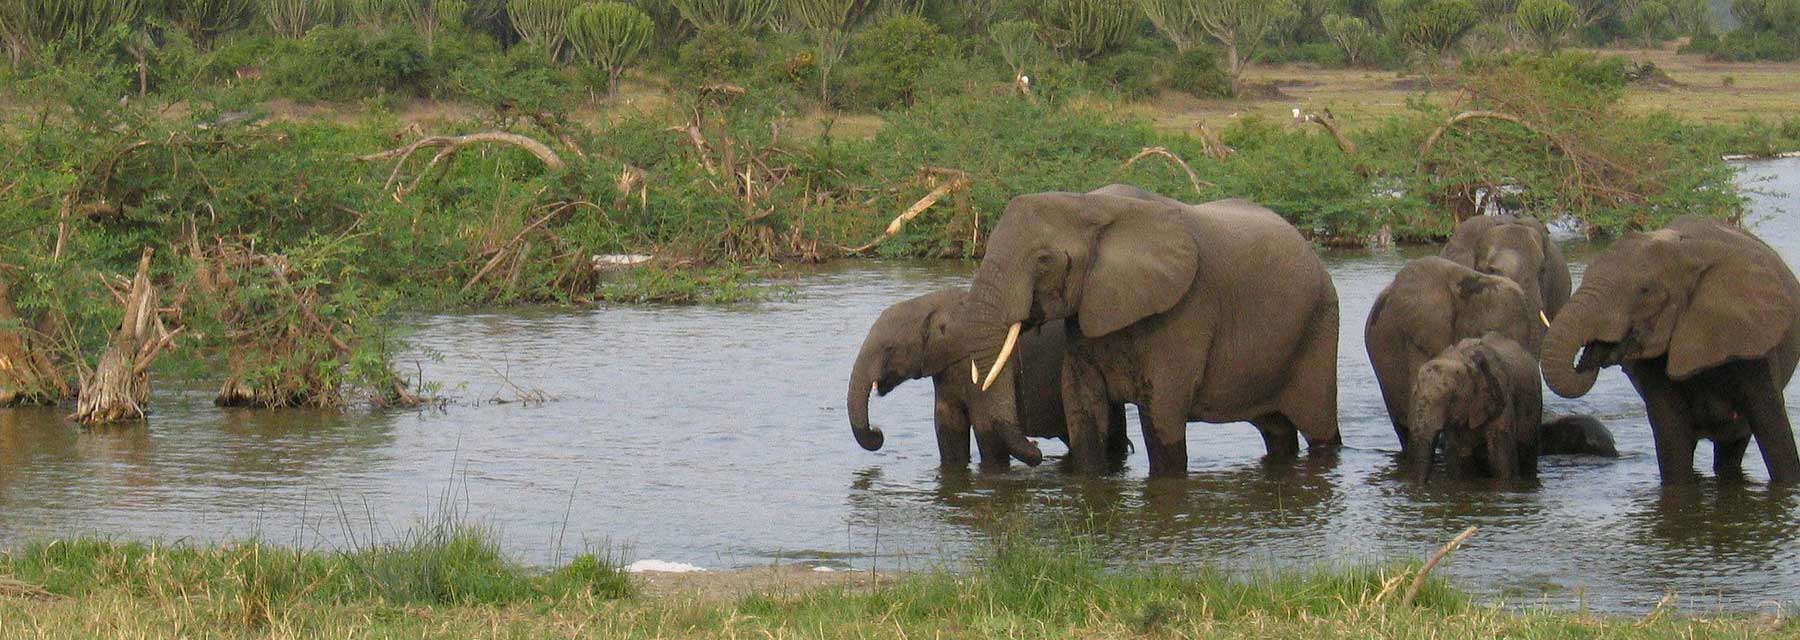 elephants in a watering hole